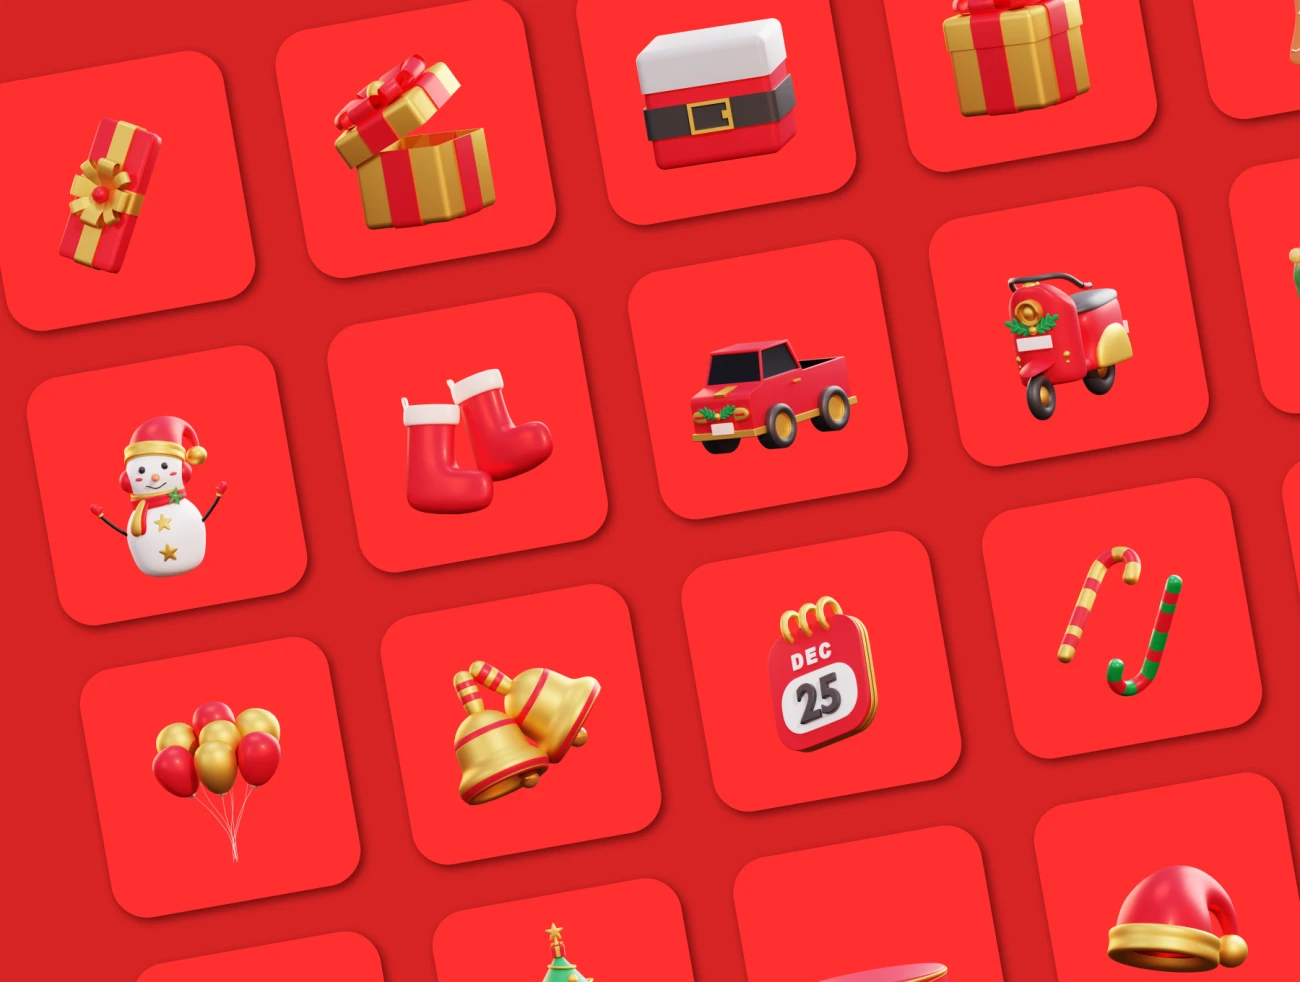 20款3D矢量圣诞节插画图标素材下载 Christmas – 3D Icon Premium Pack .blender .psd .figma插图5